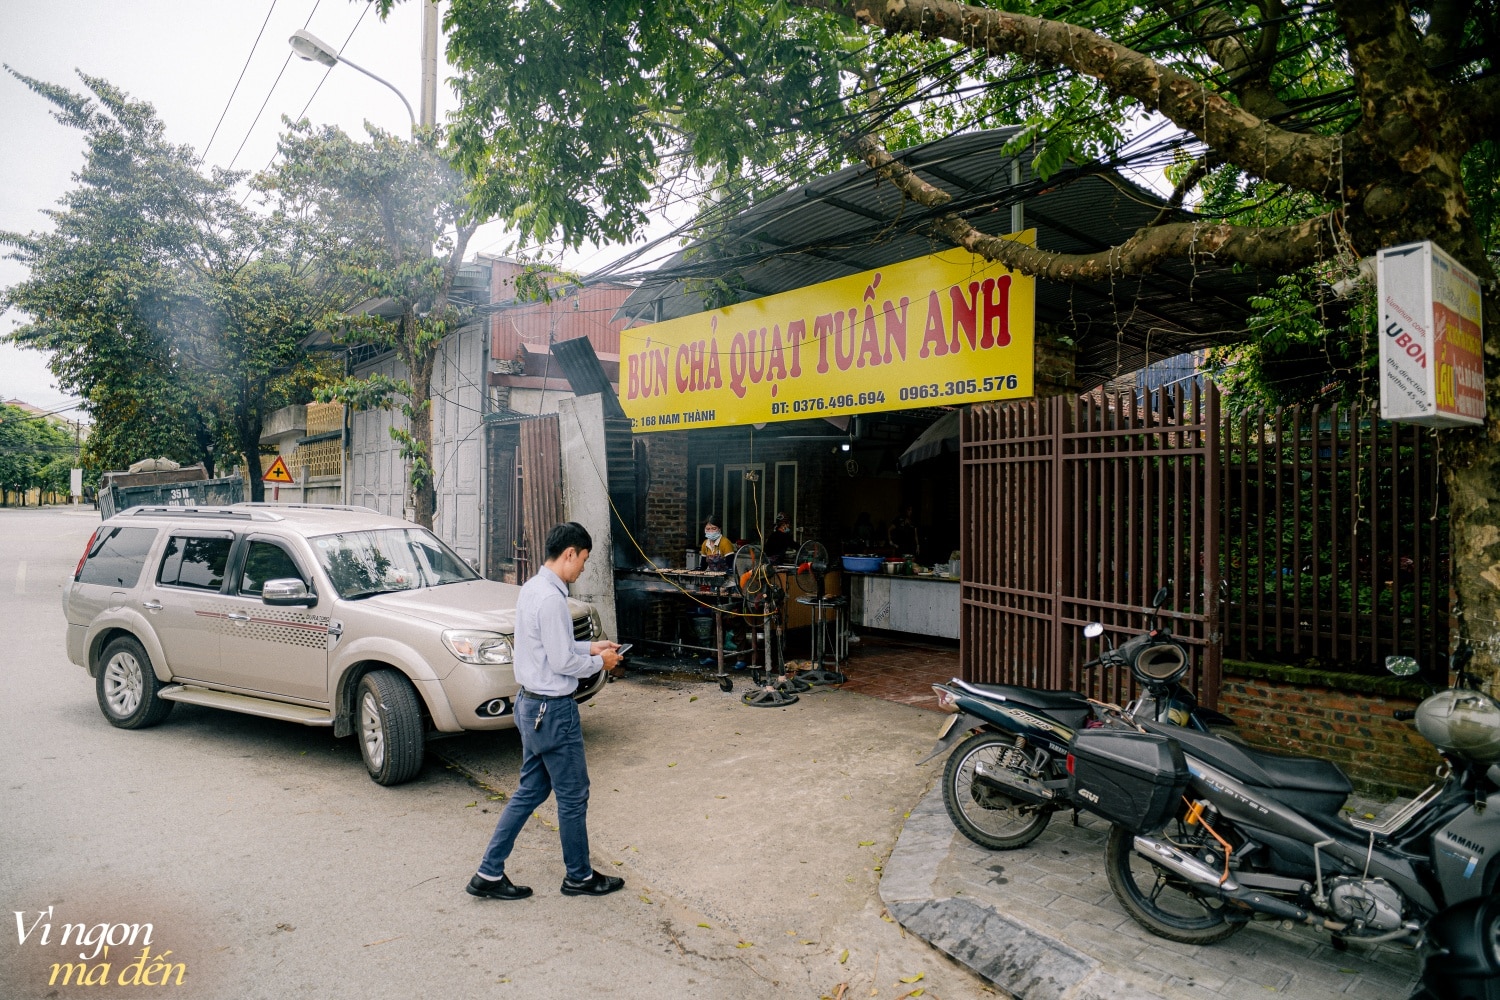 Cuối tuần trải ngiệm ẩm thực Ninh Bình: Ghé hàng miến lươn nức tiếng bán hơn nửa thế kỷ, ăn quán bún chả ở quán ngày bán hơn 700 suất - Ảnh 11.